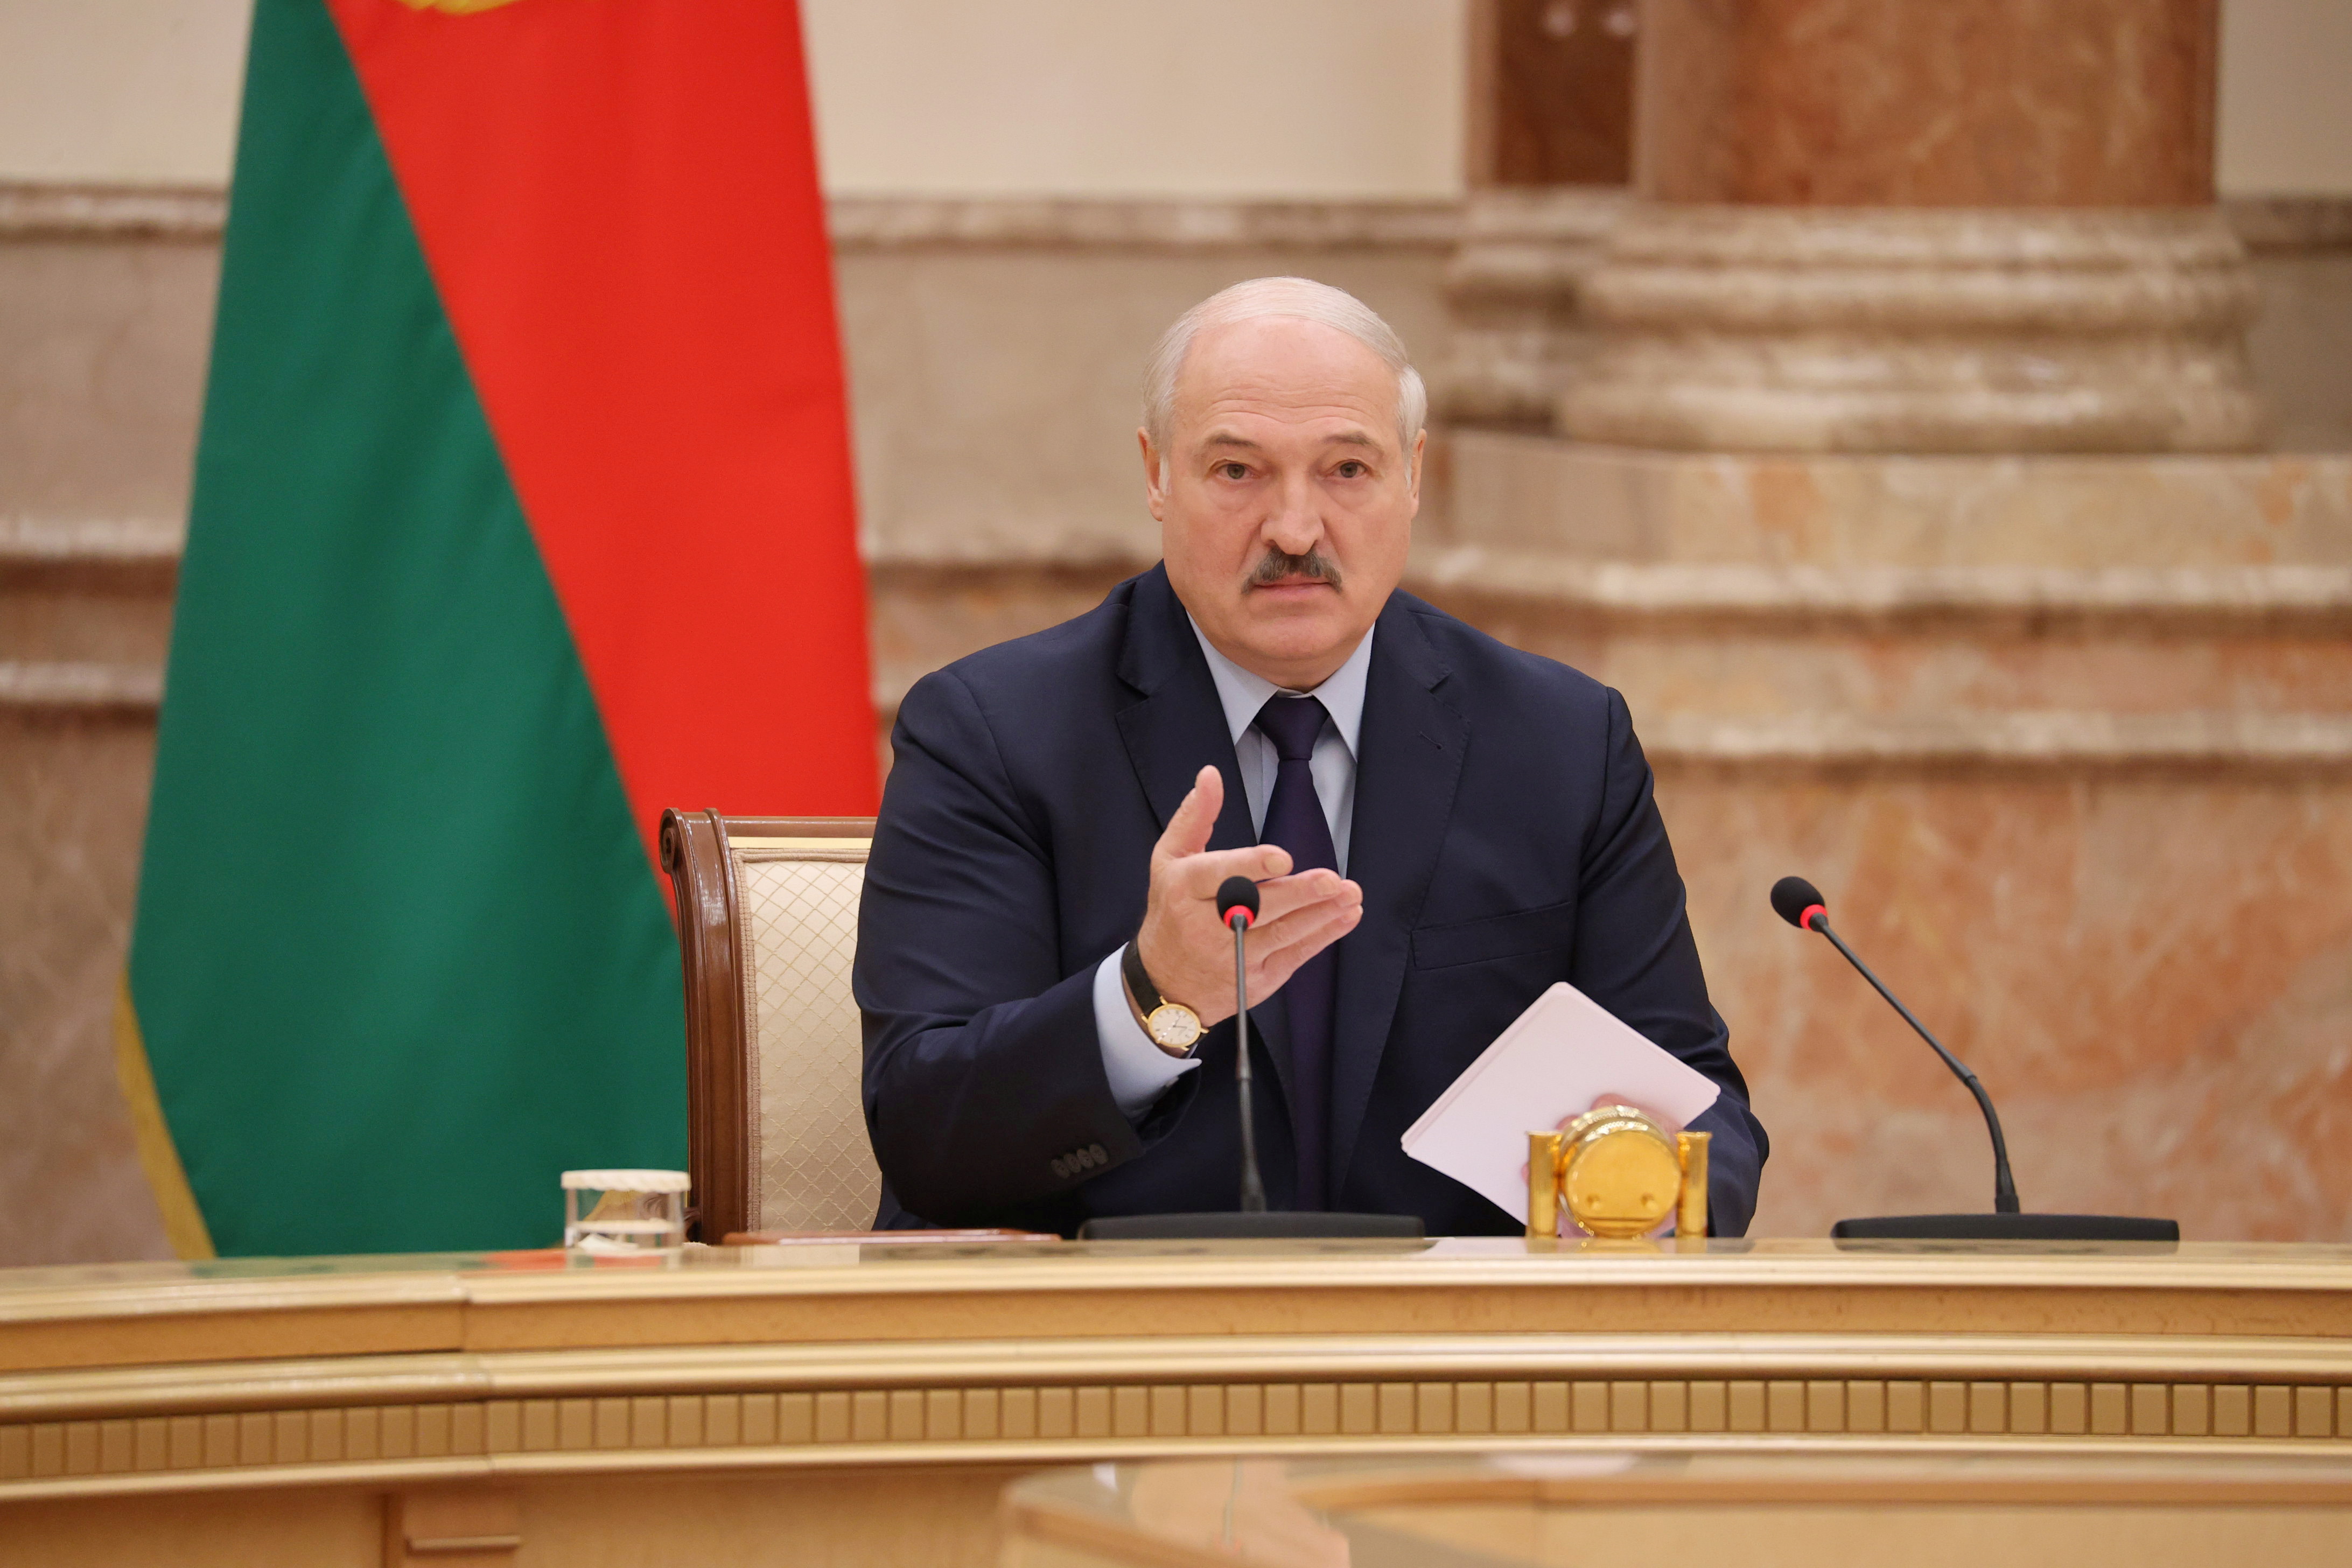 El dictador bielorruso Alexander Lukashenko asiste a una reunión de la Comisión Constitucional en Minsk, Bielorrusia, el 28 de septiembre de 2021. Maxim Guchek / BelTA /vía REUTERS